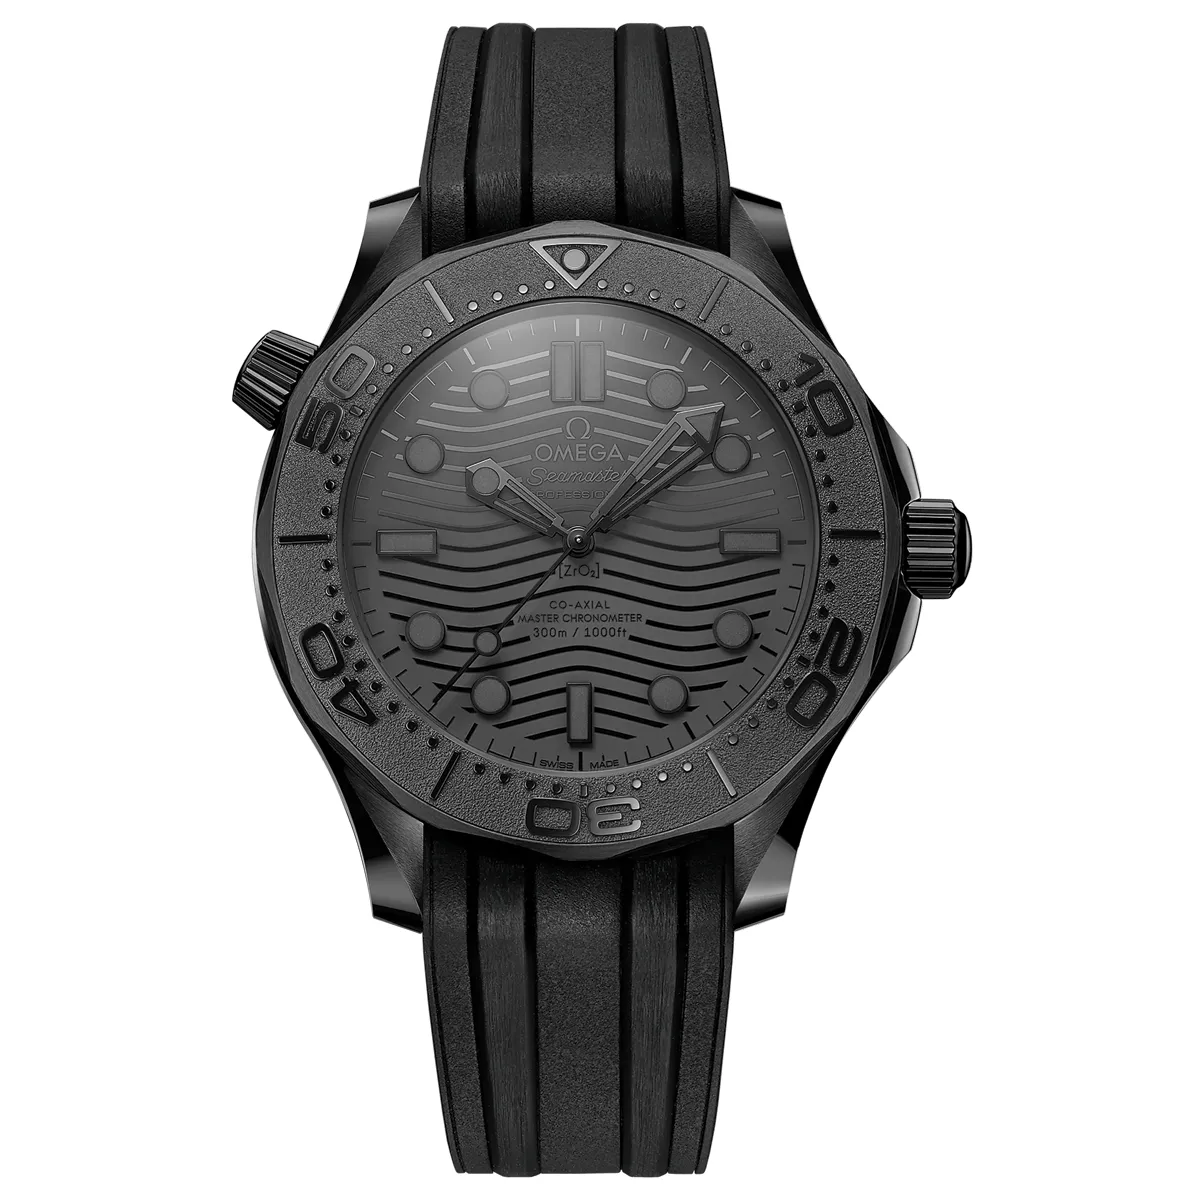 Đồng hồ Omega Seamaster Diver 300M Black Ceramic 210.92.44.20.01.003 mặt số màu đen. Dây đeo bằng cao su. Thân vỏ bằng black ceramic.